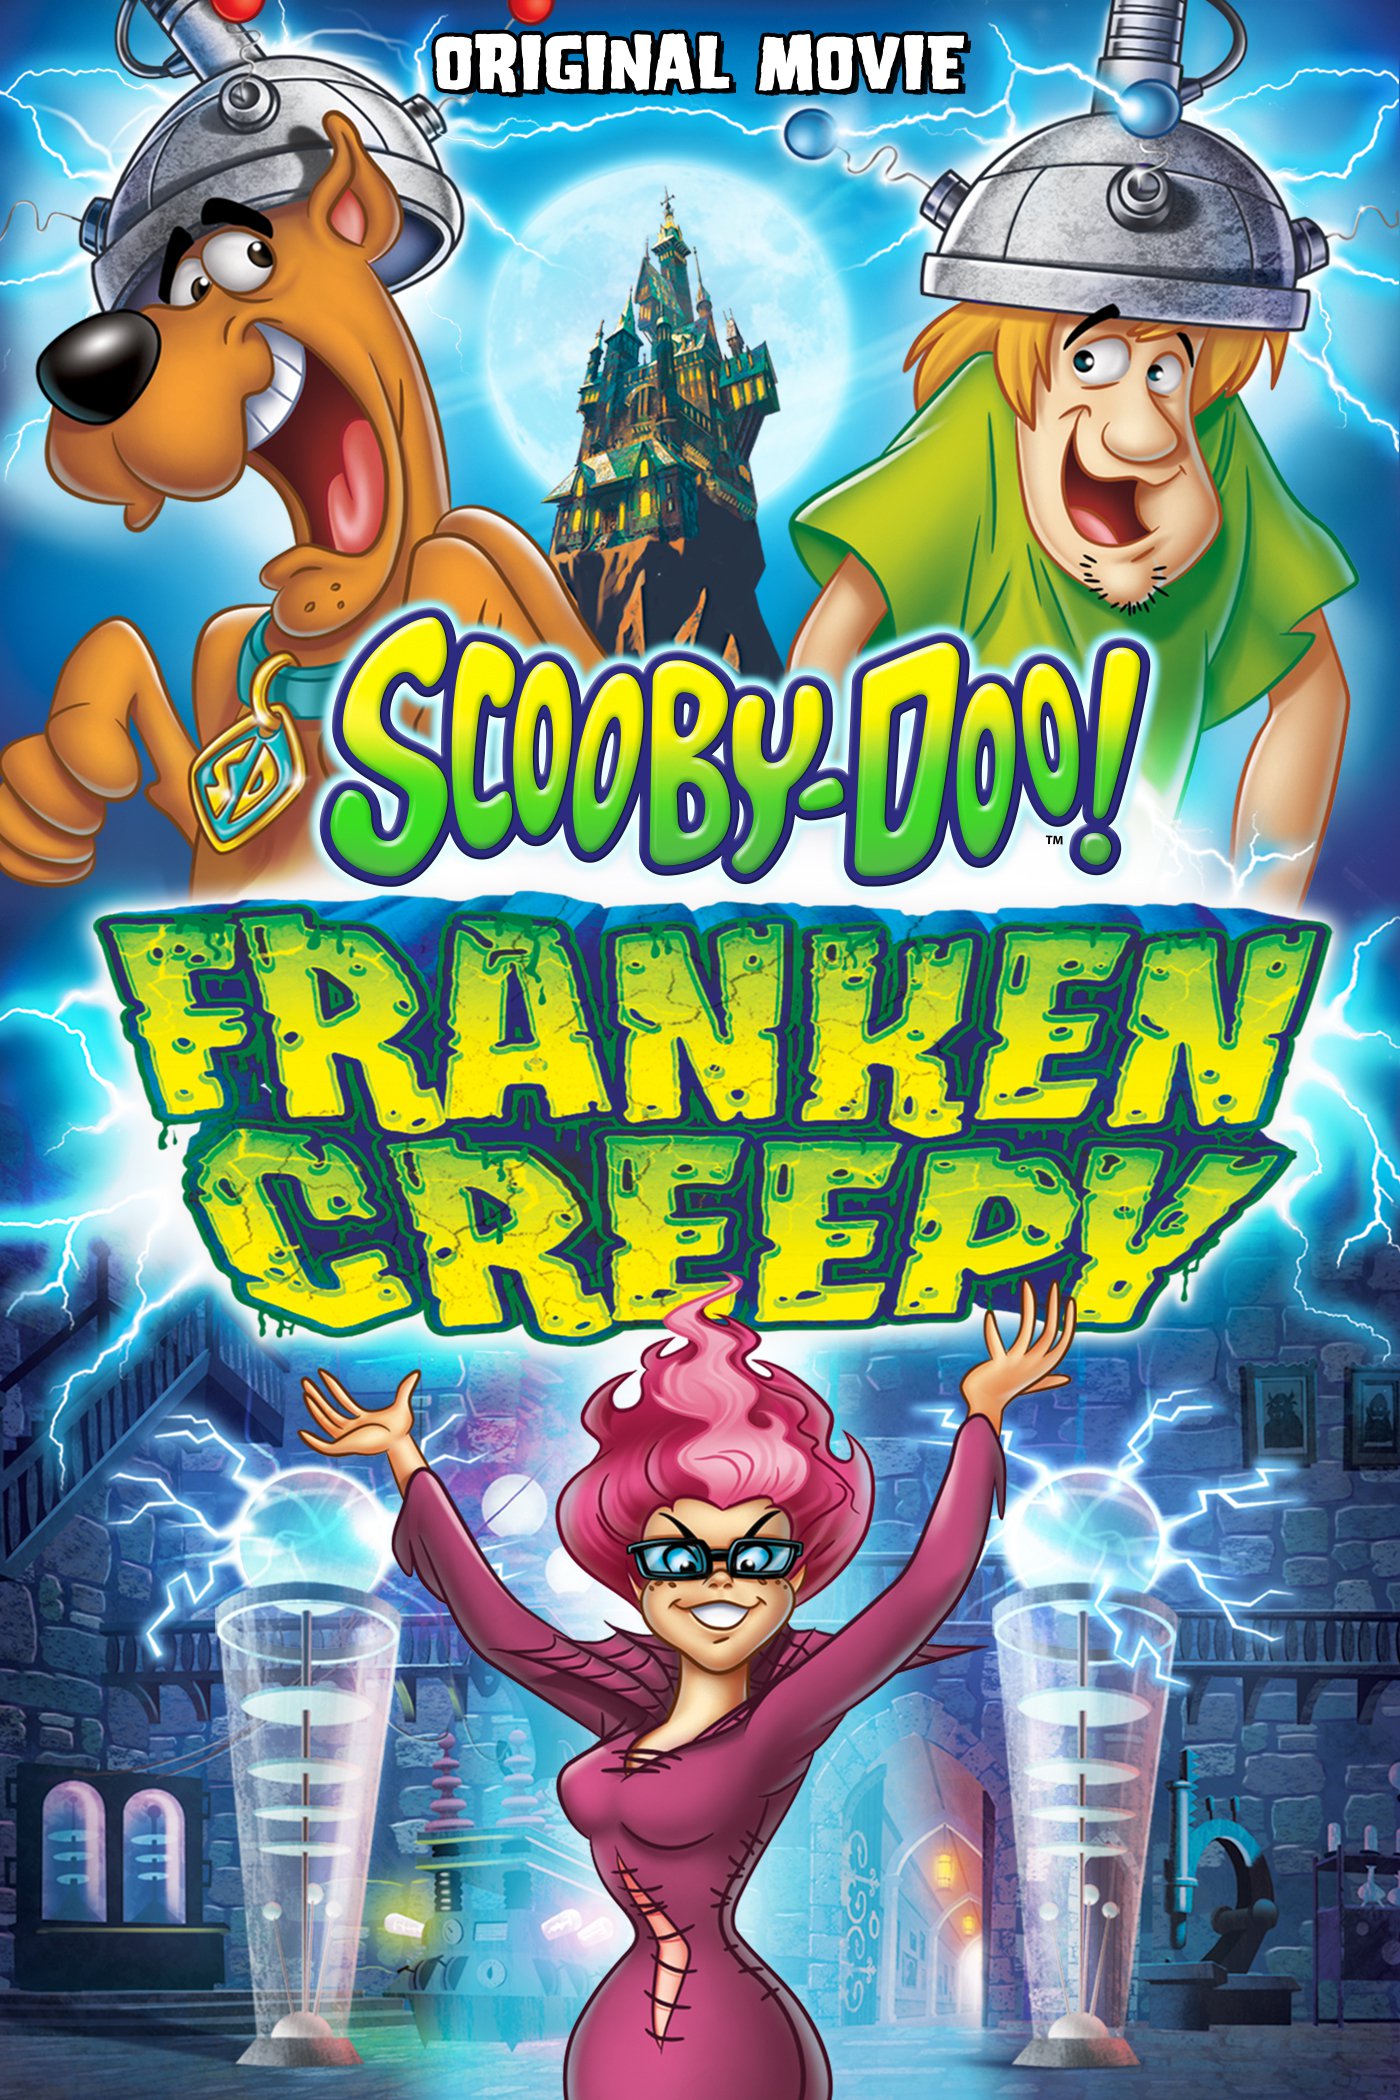 Scooby-Doo! Frankencreepy (2014) สคูบี้ดู กับอสุรกายพันธุ์ผสม Frank Welker